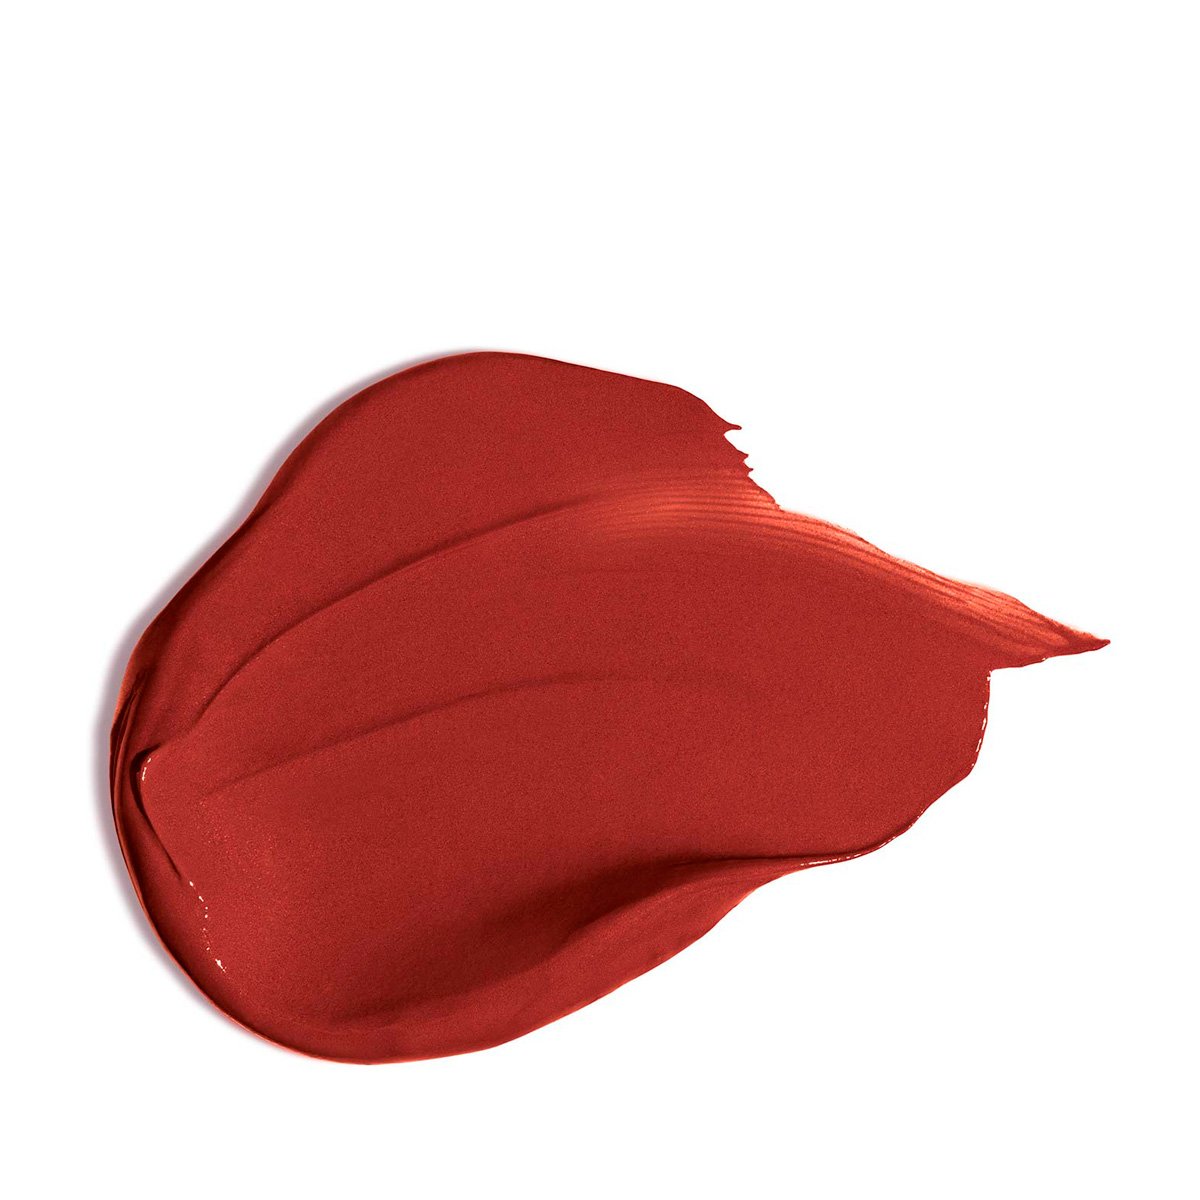 Lipstick Clarins Joli Rouge Velvet Spicy Cinnamon